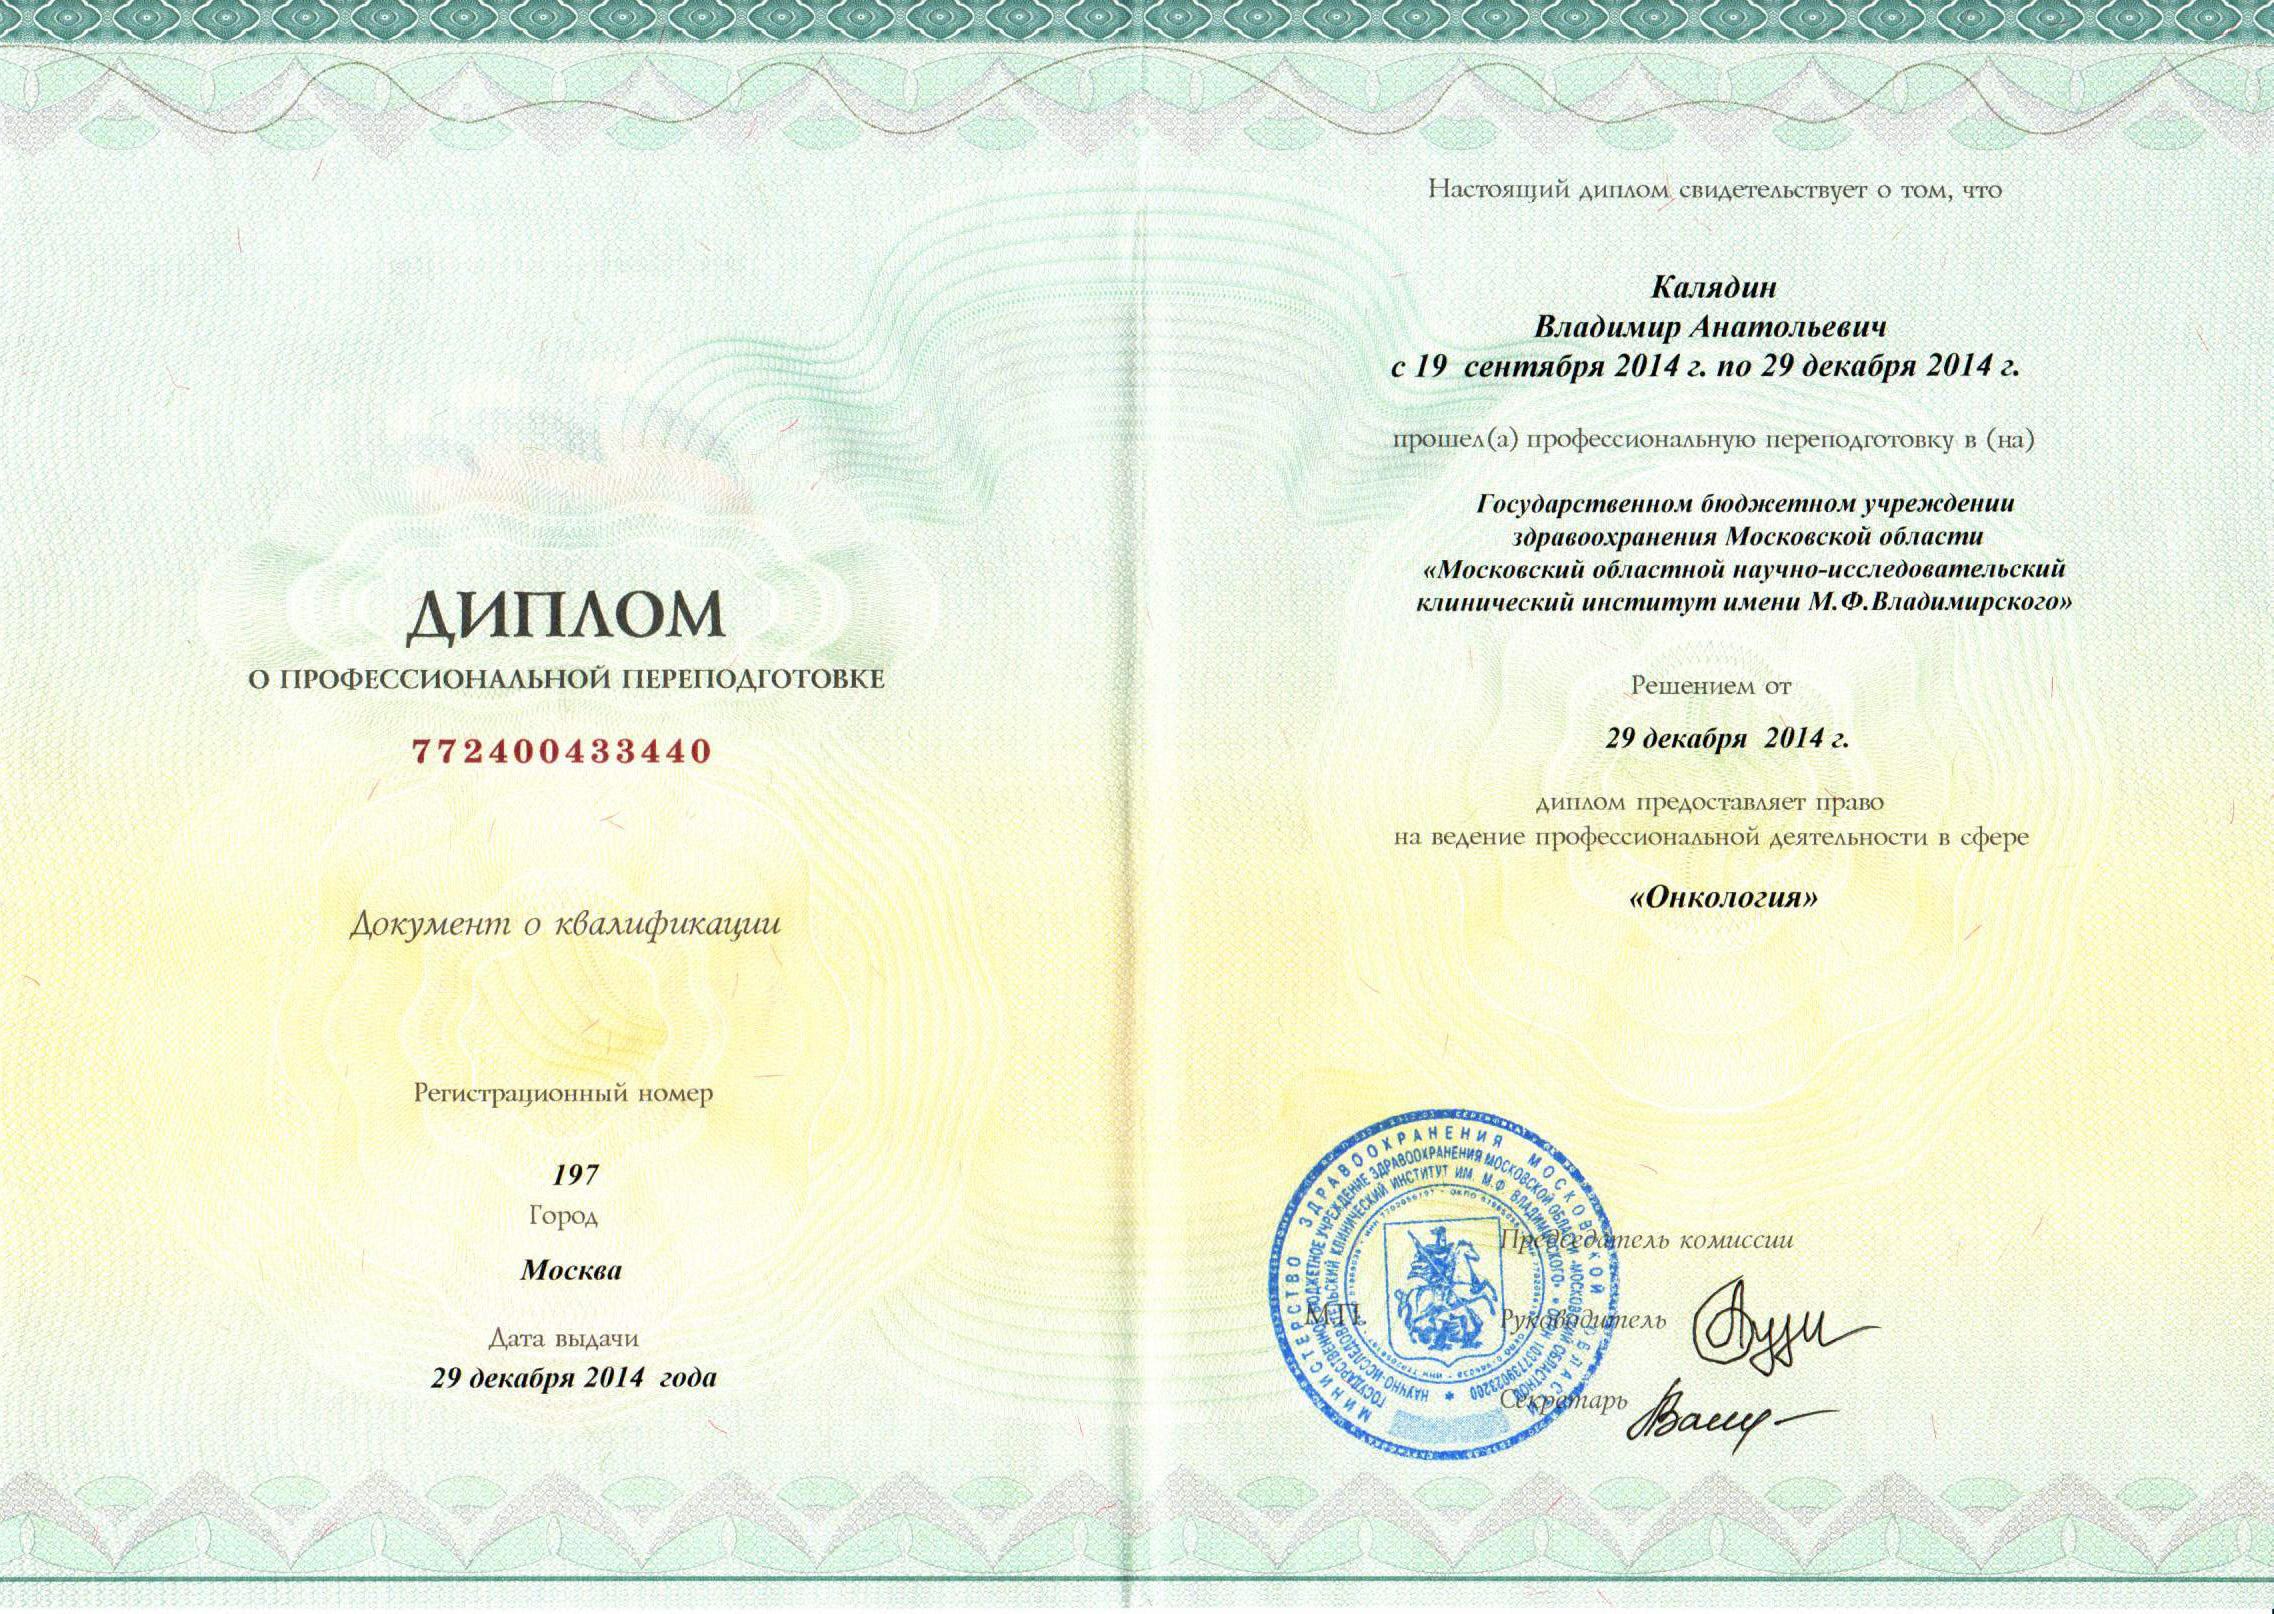 Диплом о профессиональной переподготовке от 29 декабря 2014. Онкология.